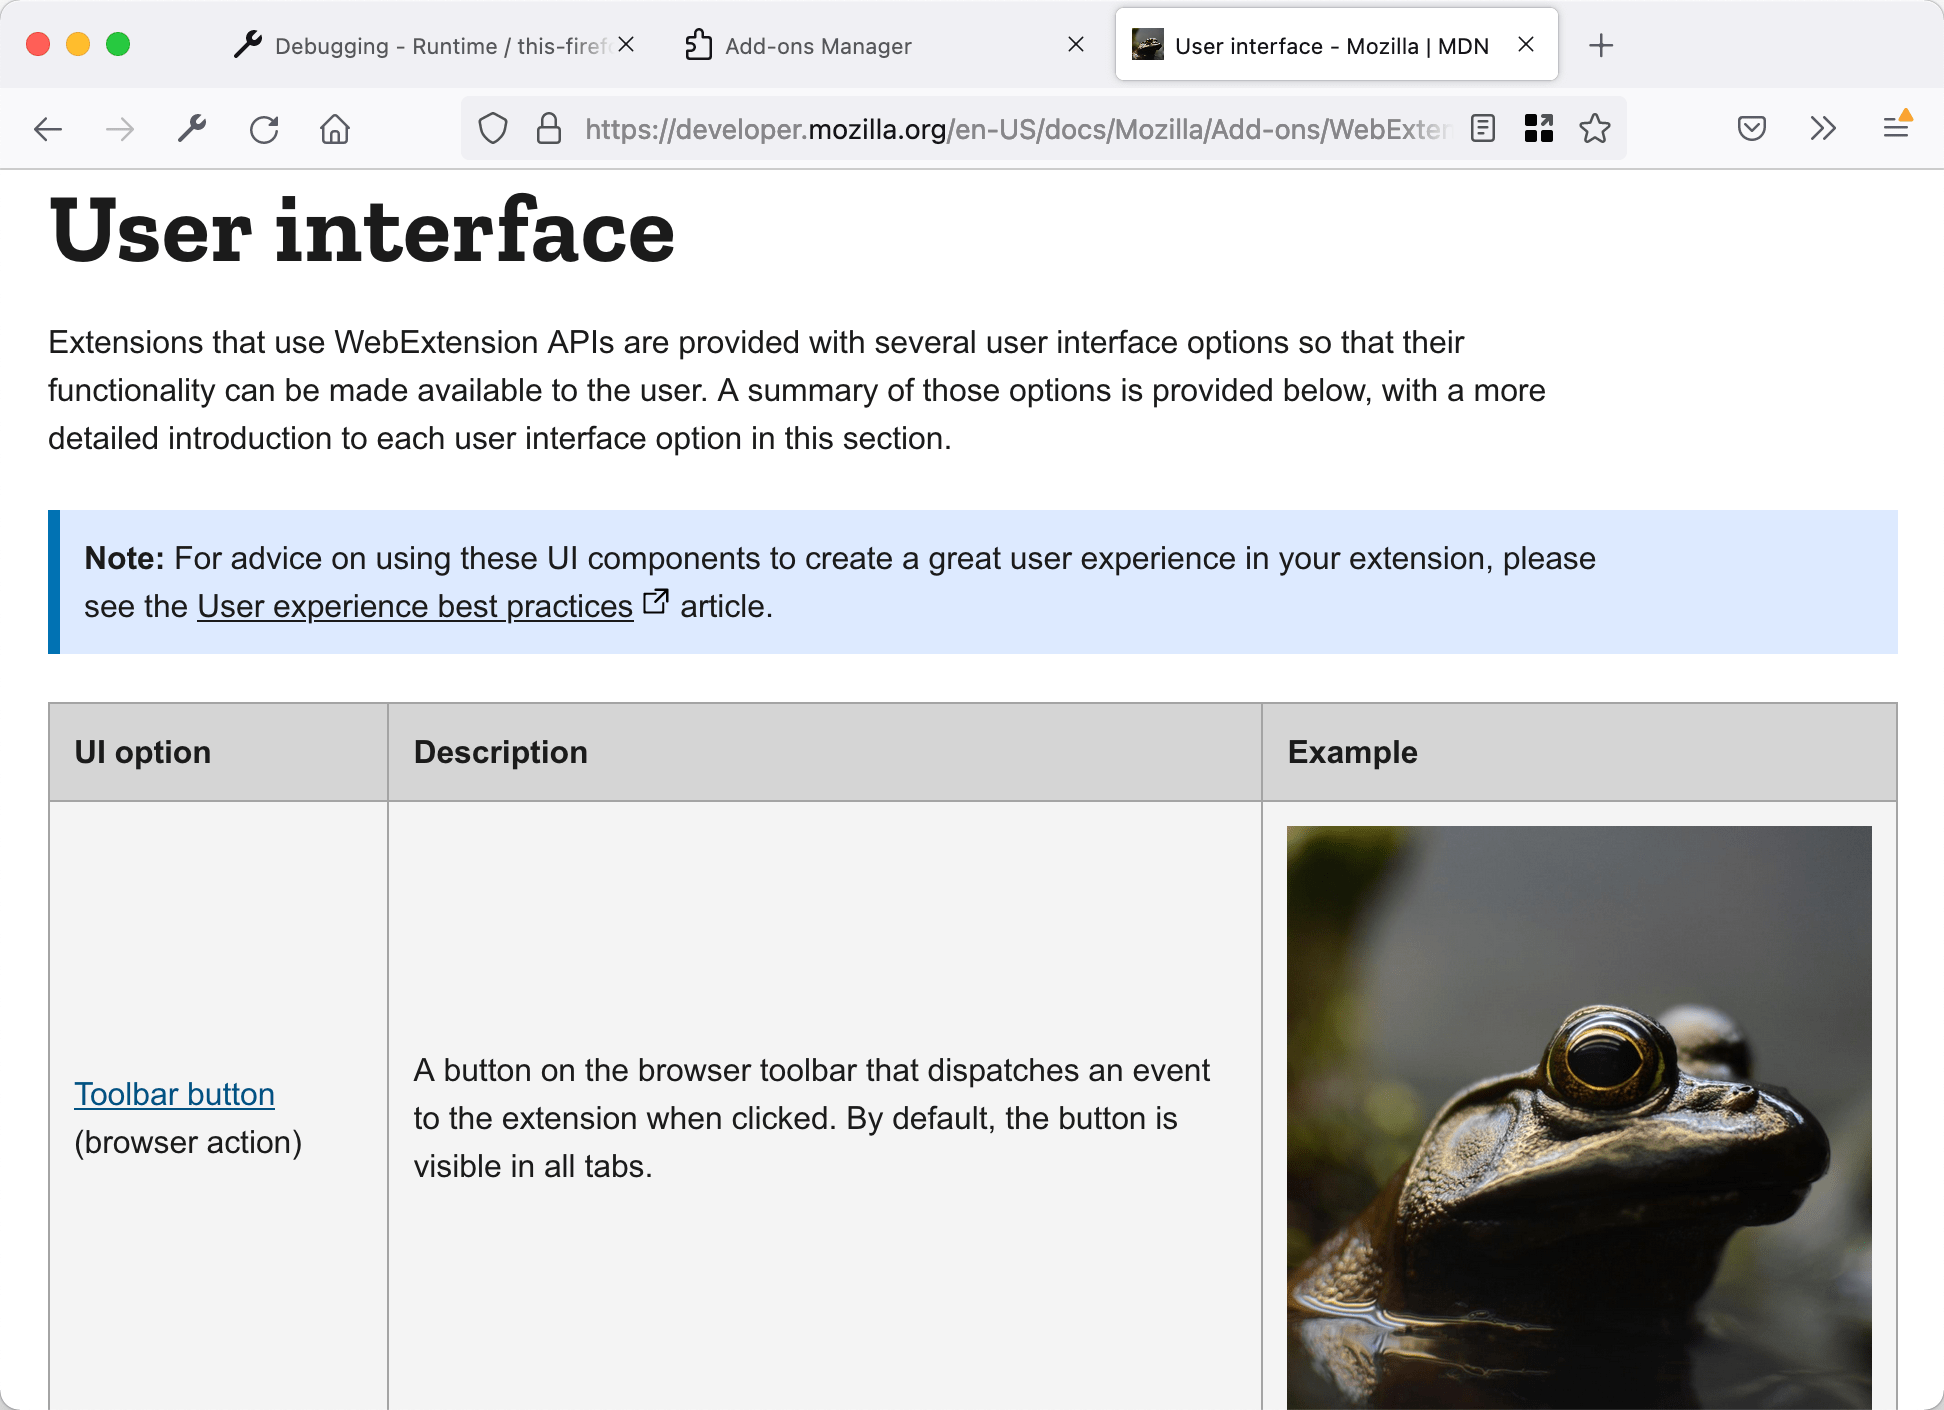 ページ内の画像をカエルの画像に置き換えた場合